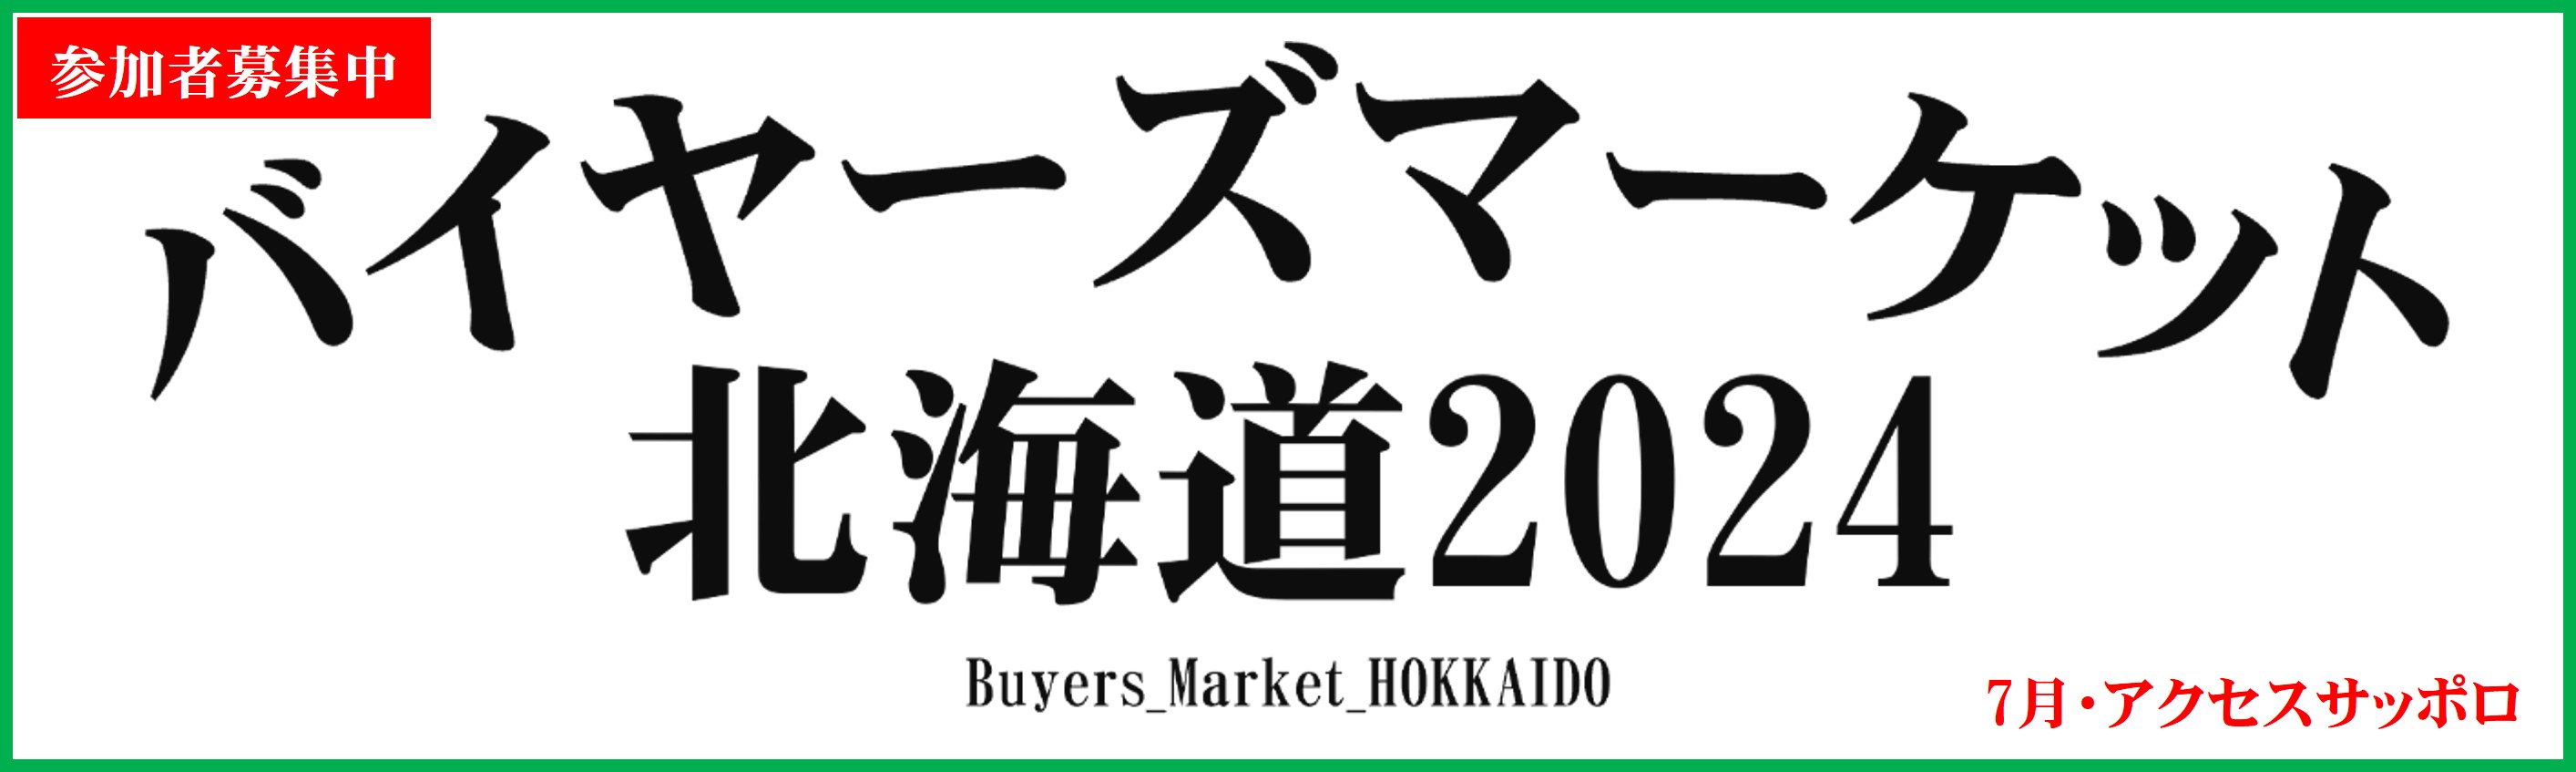 バイヤーズマーケット北海道2021